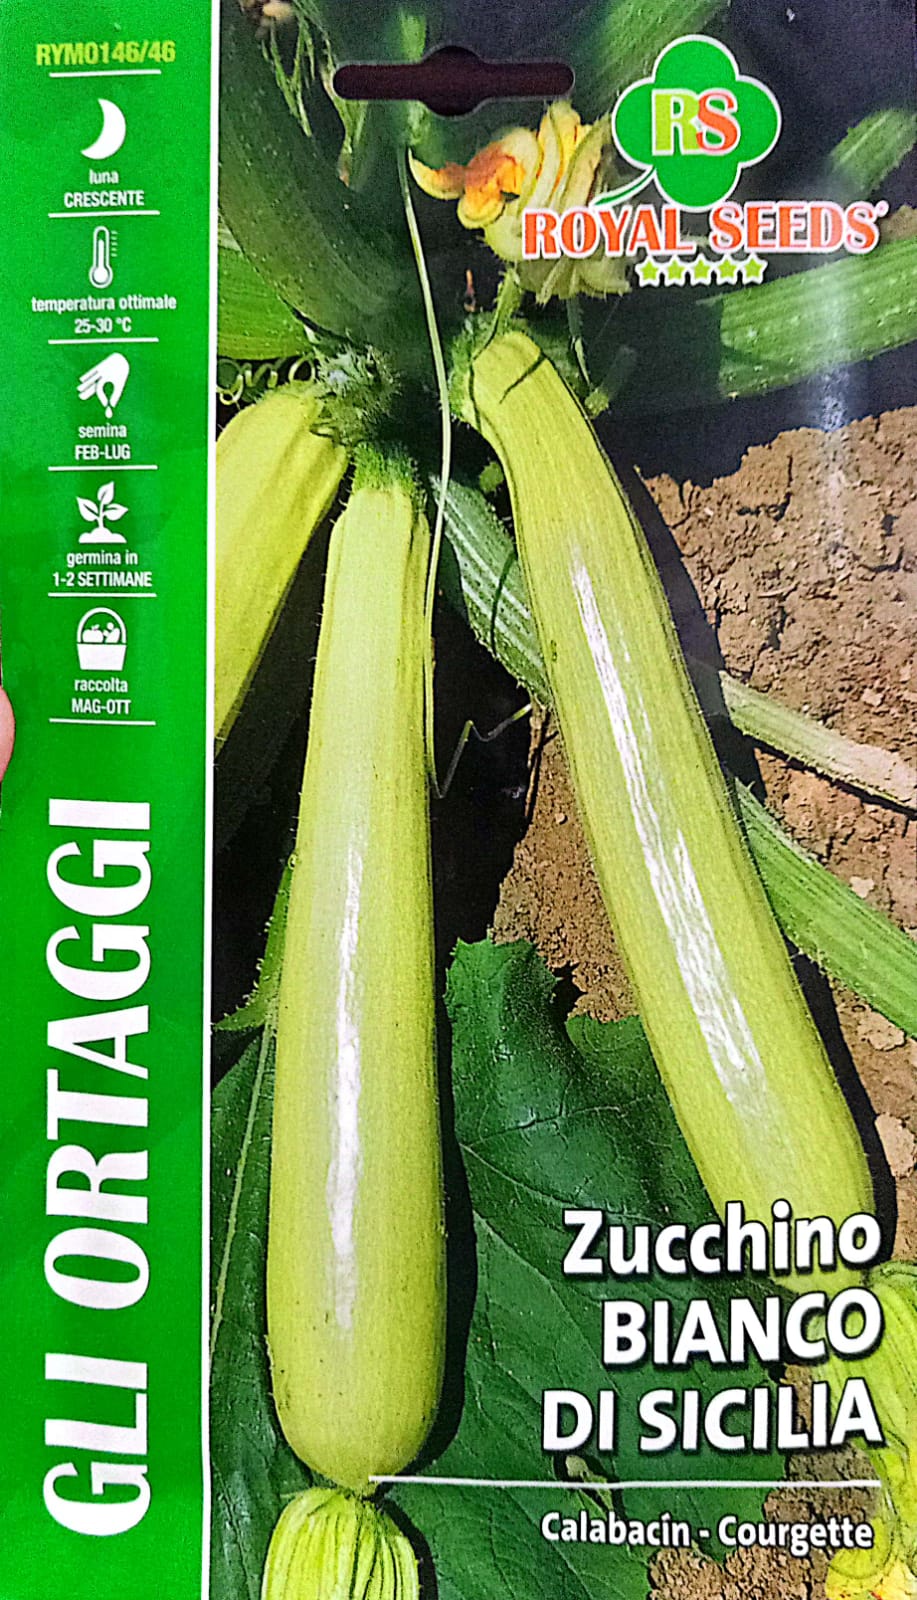 Royal Zucchino Bianco Di Sicilia 146/46